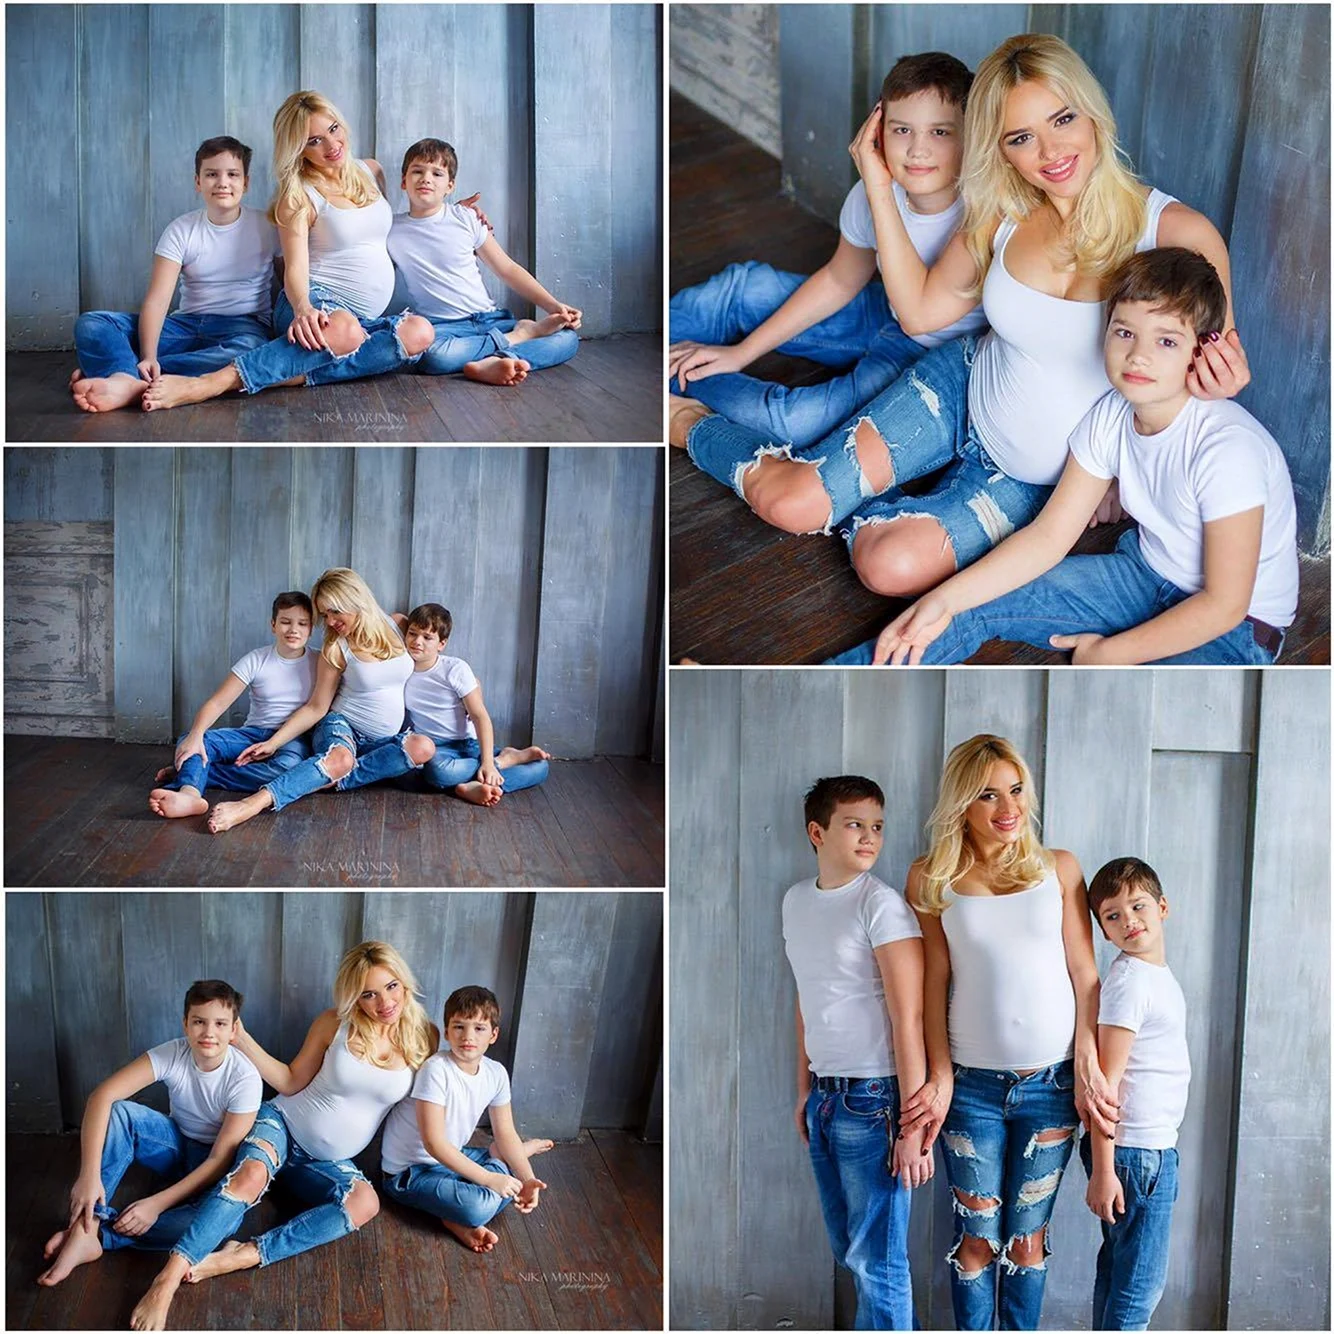 Фотосессия в белых футболках и джинсах семейная